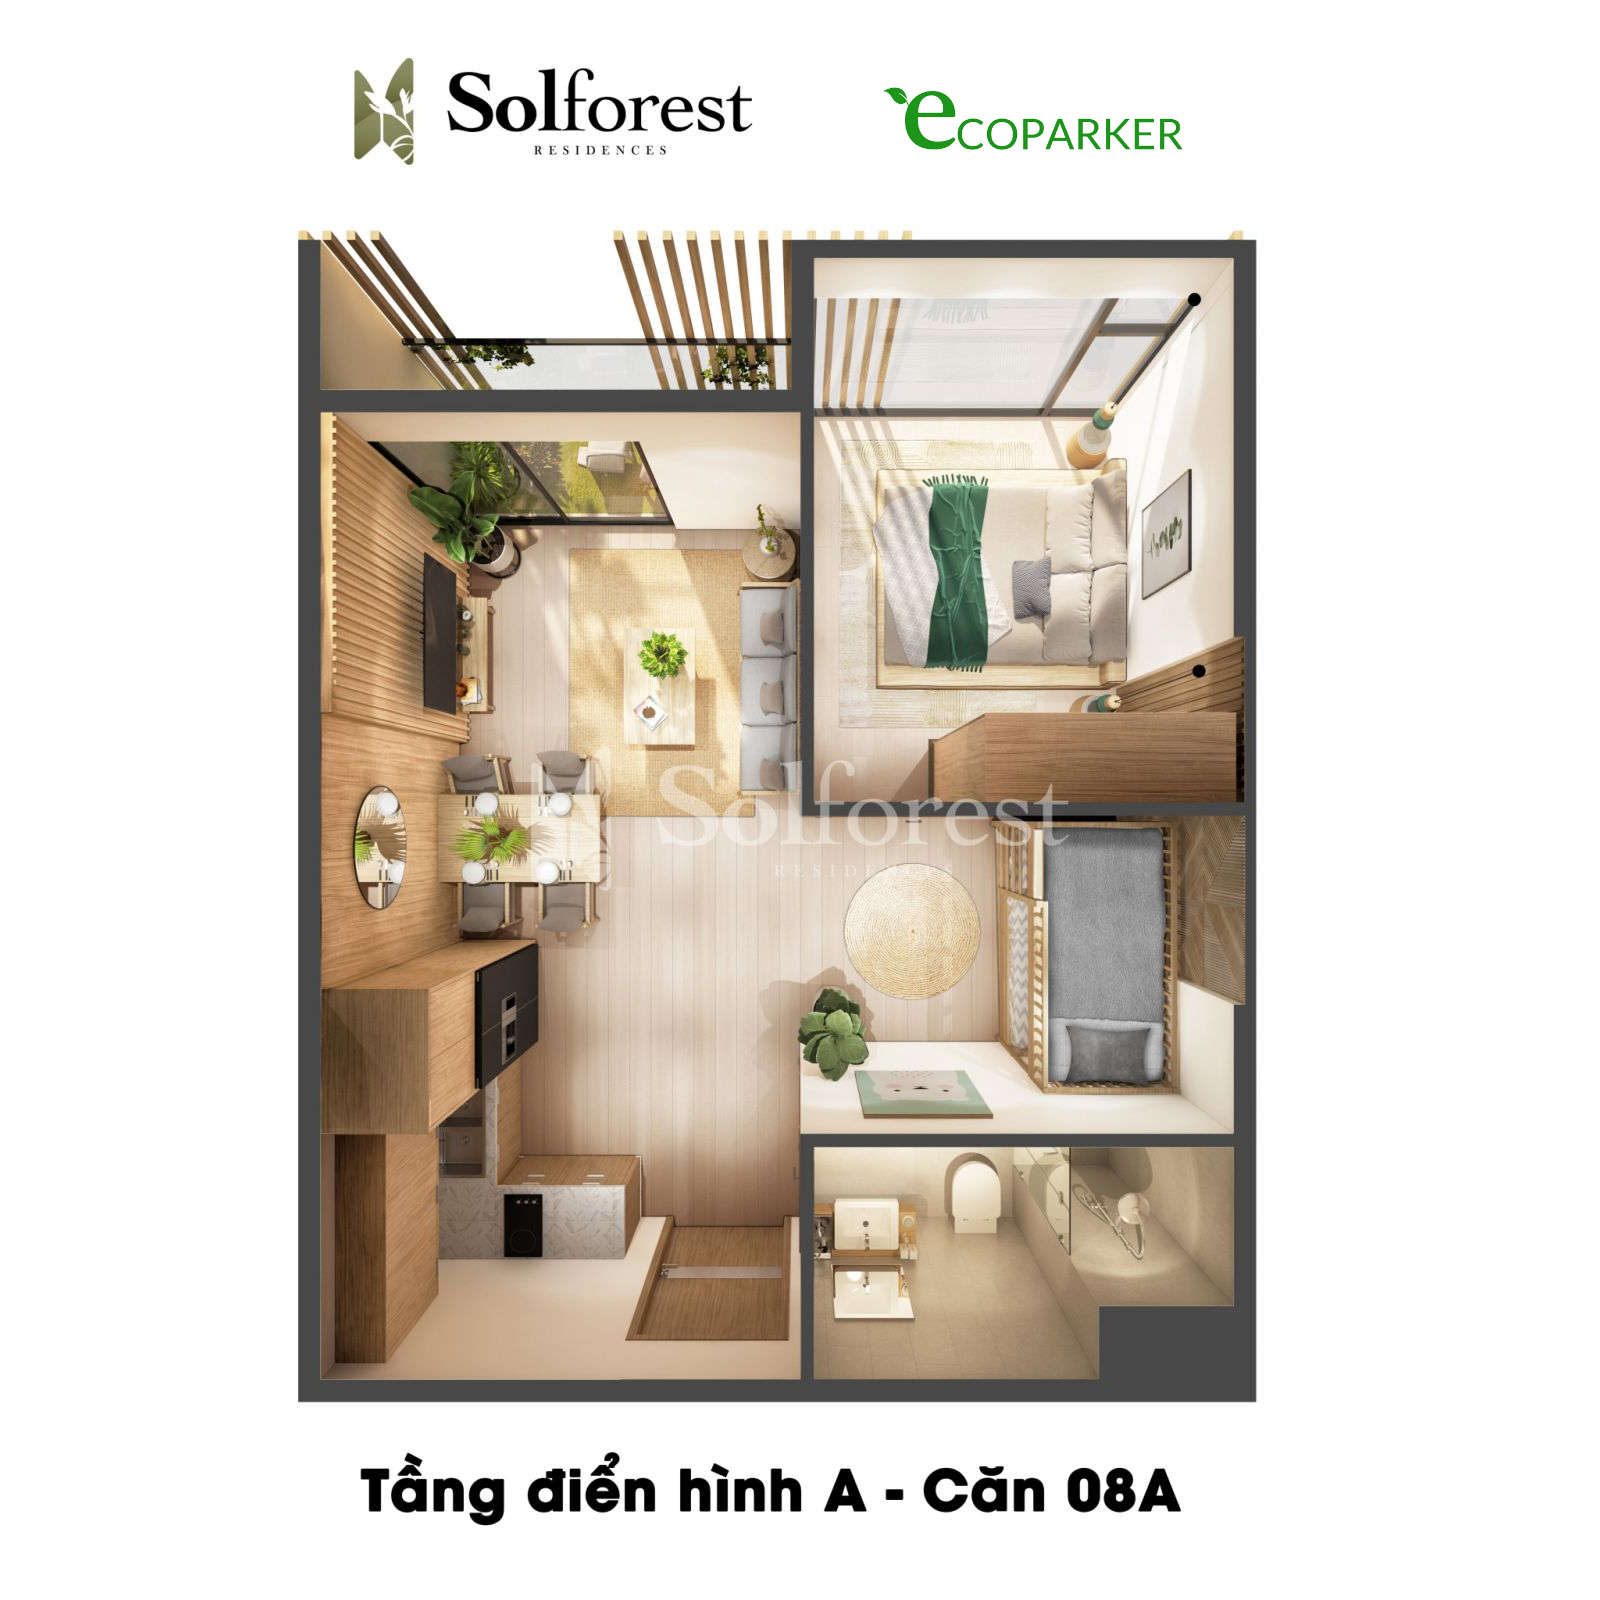 Căn hộ Solforest với thiết kế kiến trúc độc đáo và nội thất sang trọng sẽ là một nơi lý tưởng cho bạn để tận hưởng cuộc sống đẳng cấp và tiện nghi. Đừng bỏ lỡ cơ hội để khám phá những hình ảnh đẹp của căn hộ này nhé!